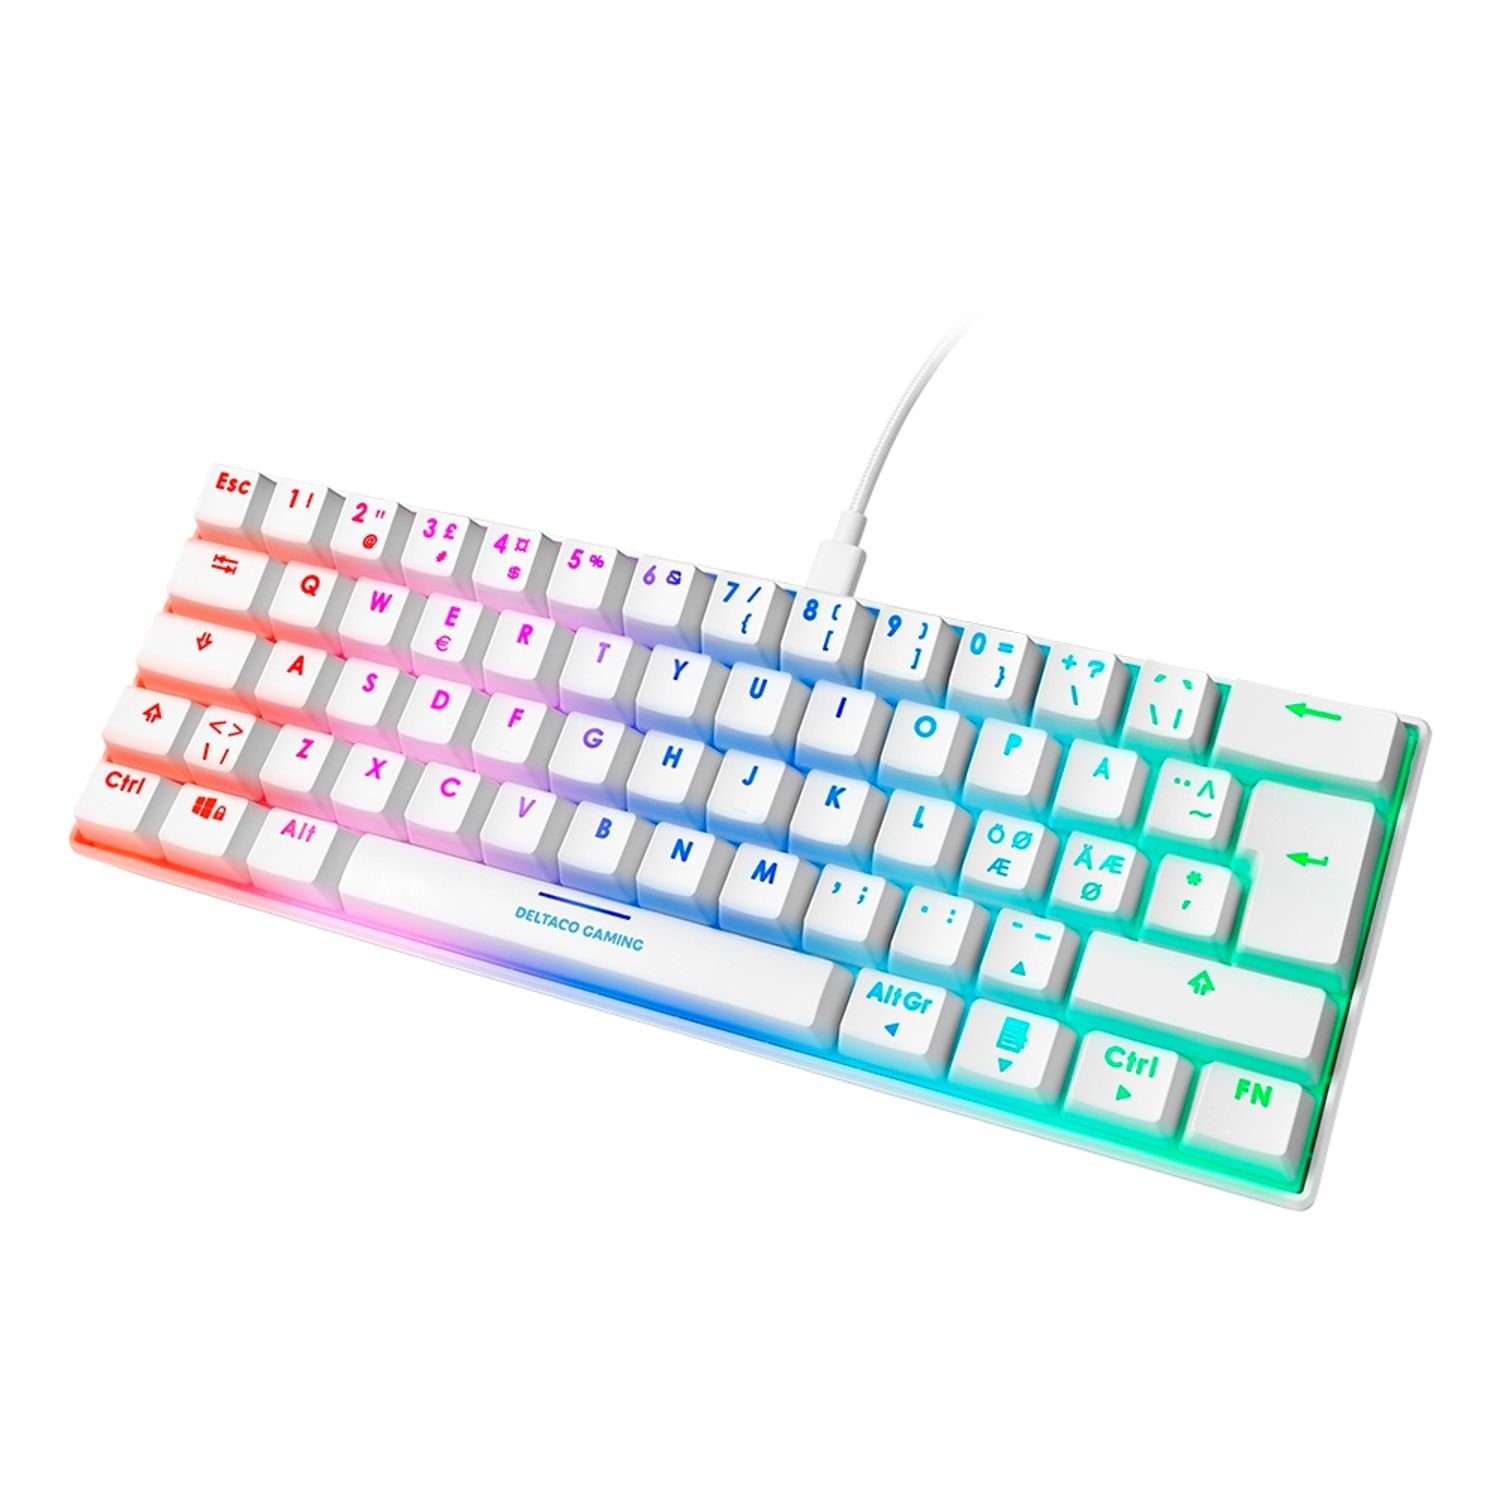 DELTACO Mechanische Mini Gaming Tastatur (62 Tasten, LED RGB  Hintergrundbeleuchtung) Gaming-Tastatur (inkl. 5 Jahre Herstellergarantie)